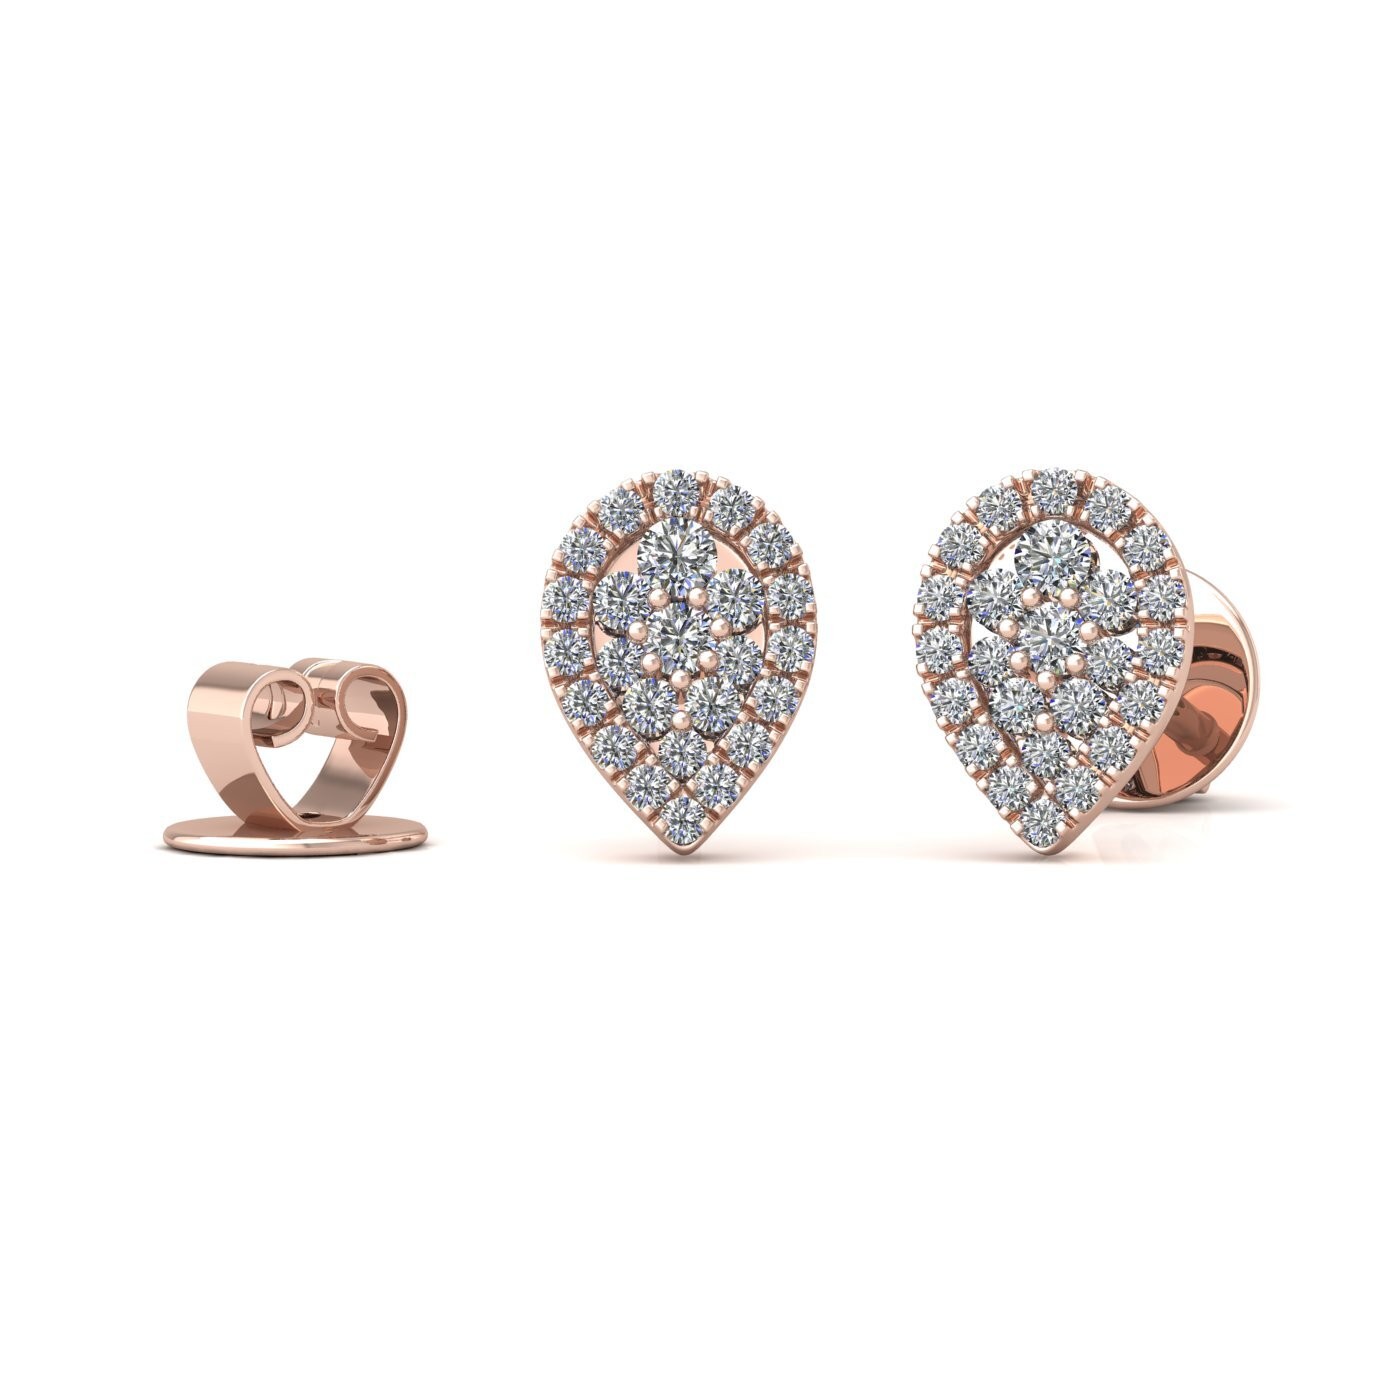 18k rose gold  pear shaped illusion set diamond earrings 0.21 ct